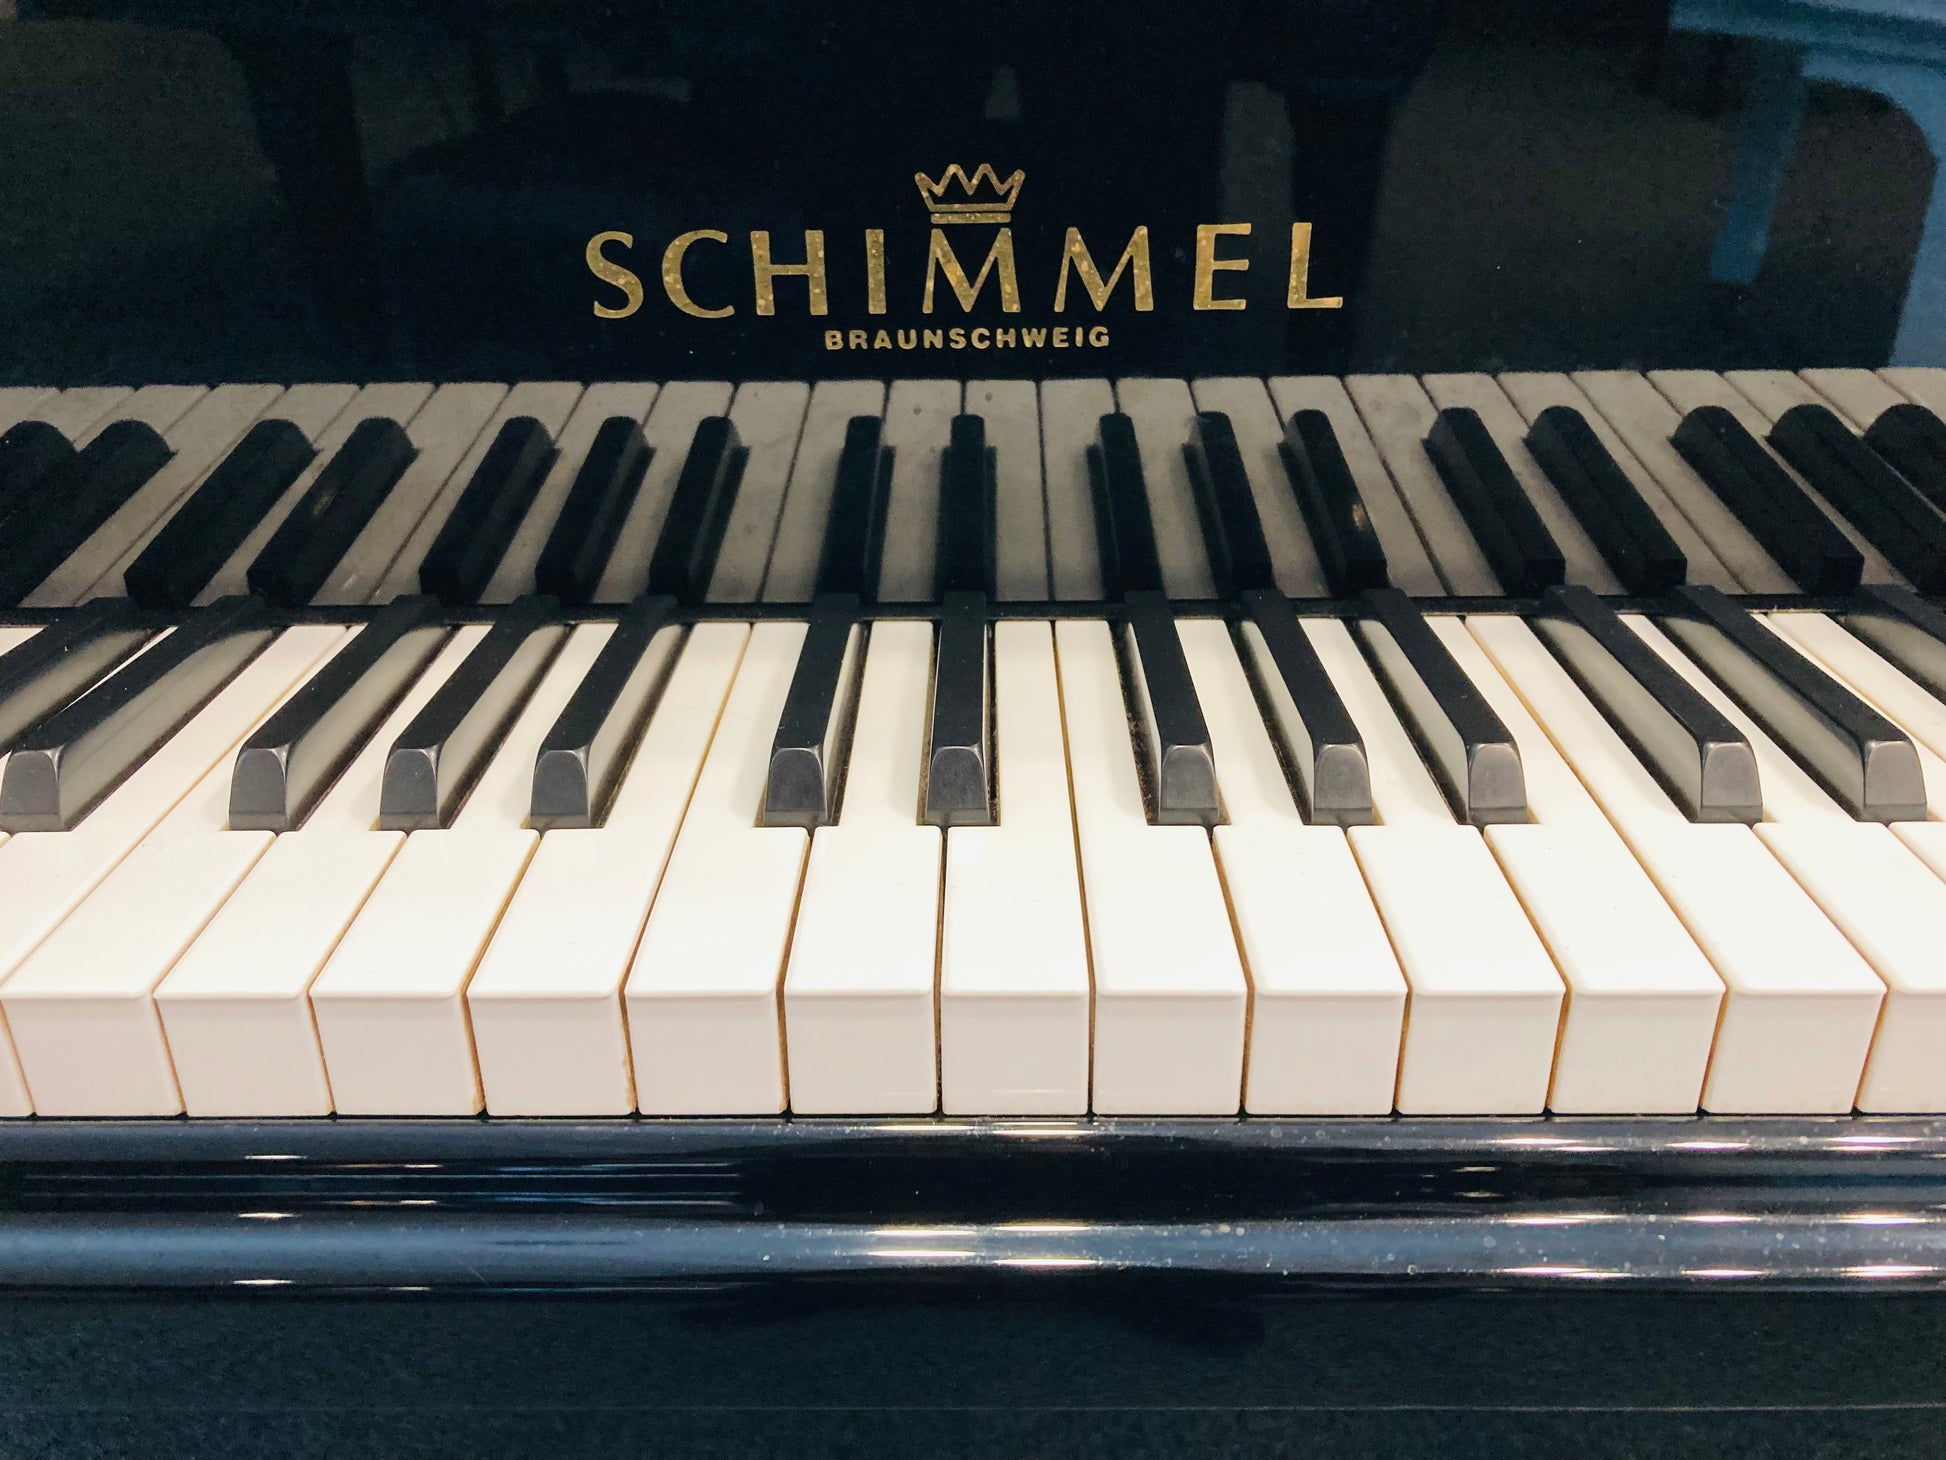 Schimmel (Fabriqué en Allemagne) modèle 155 - (5' 2) – Pianos Bolduc